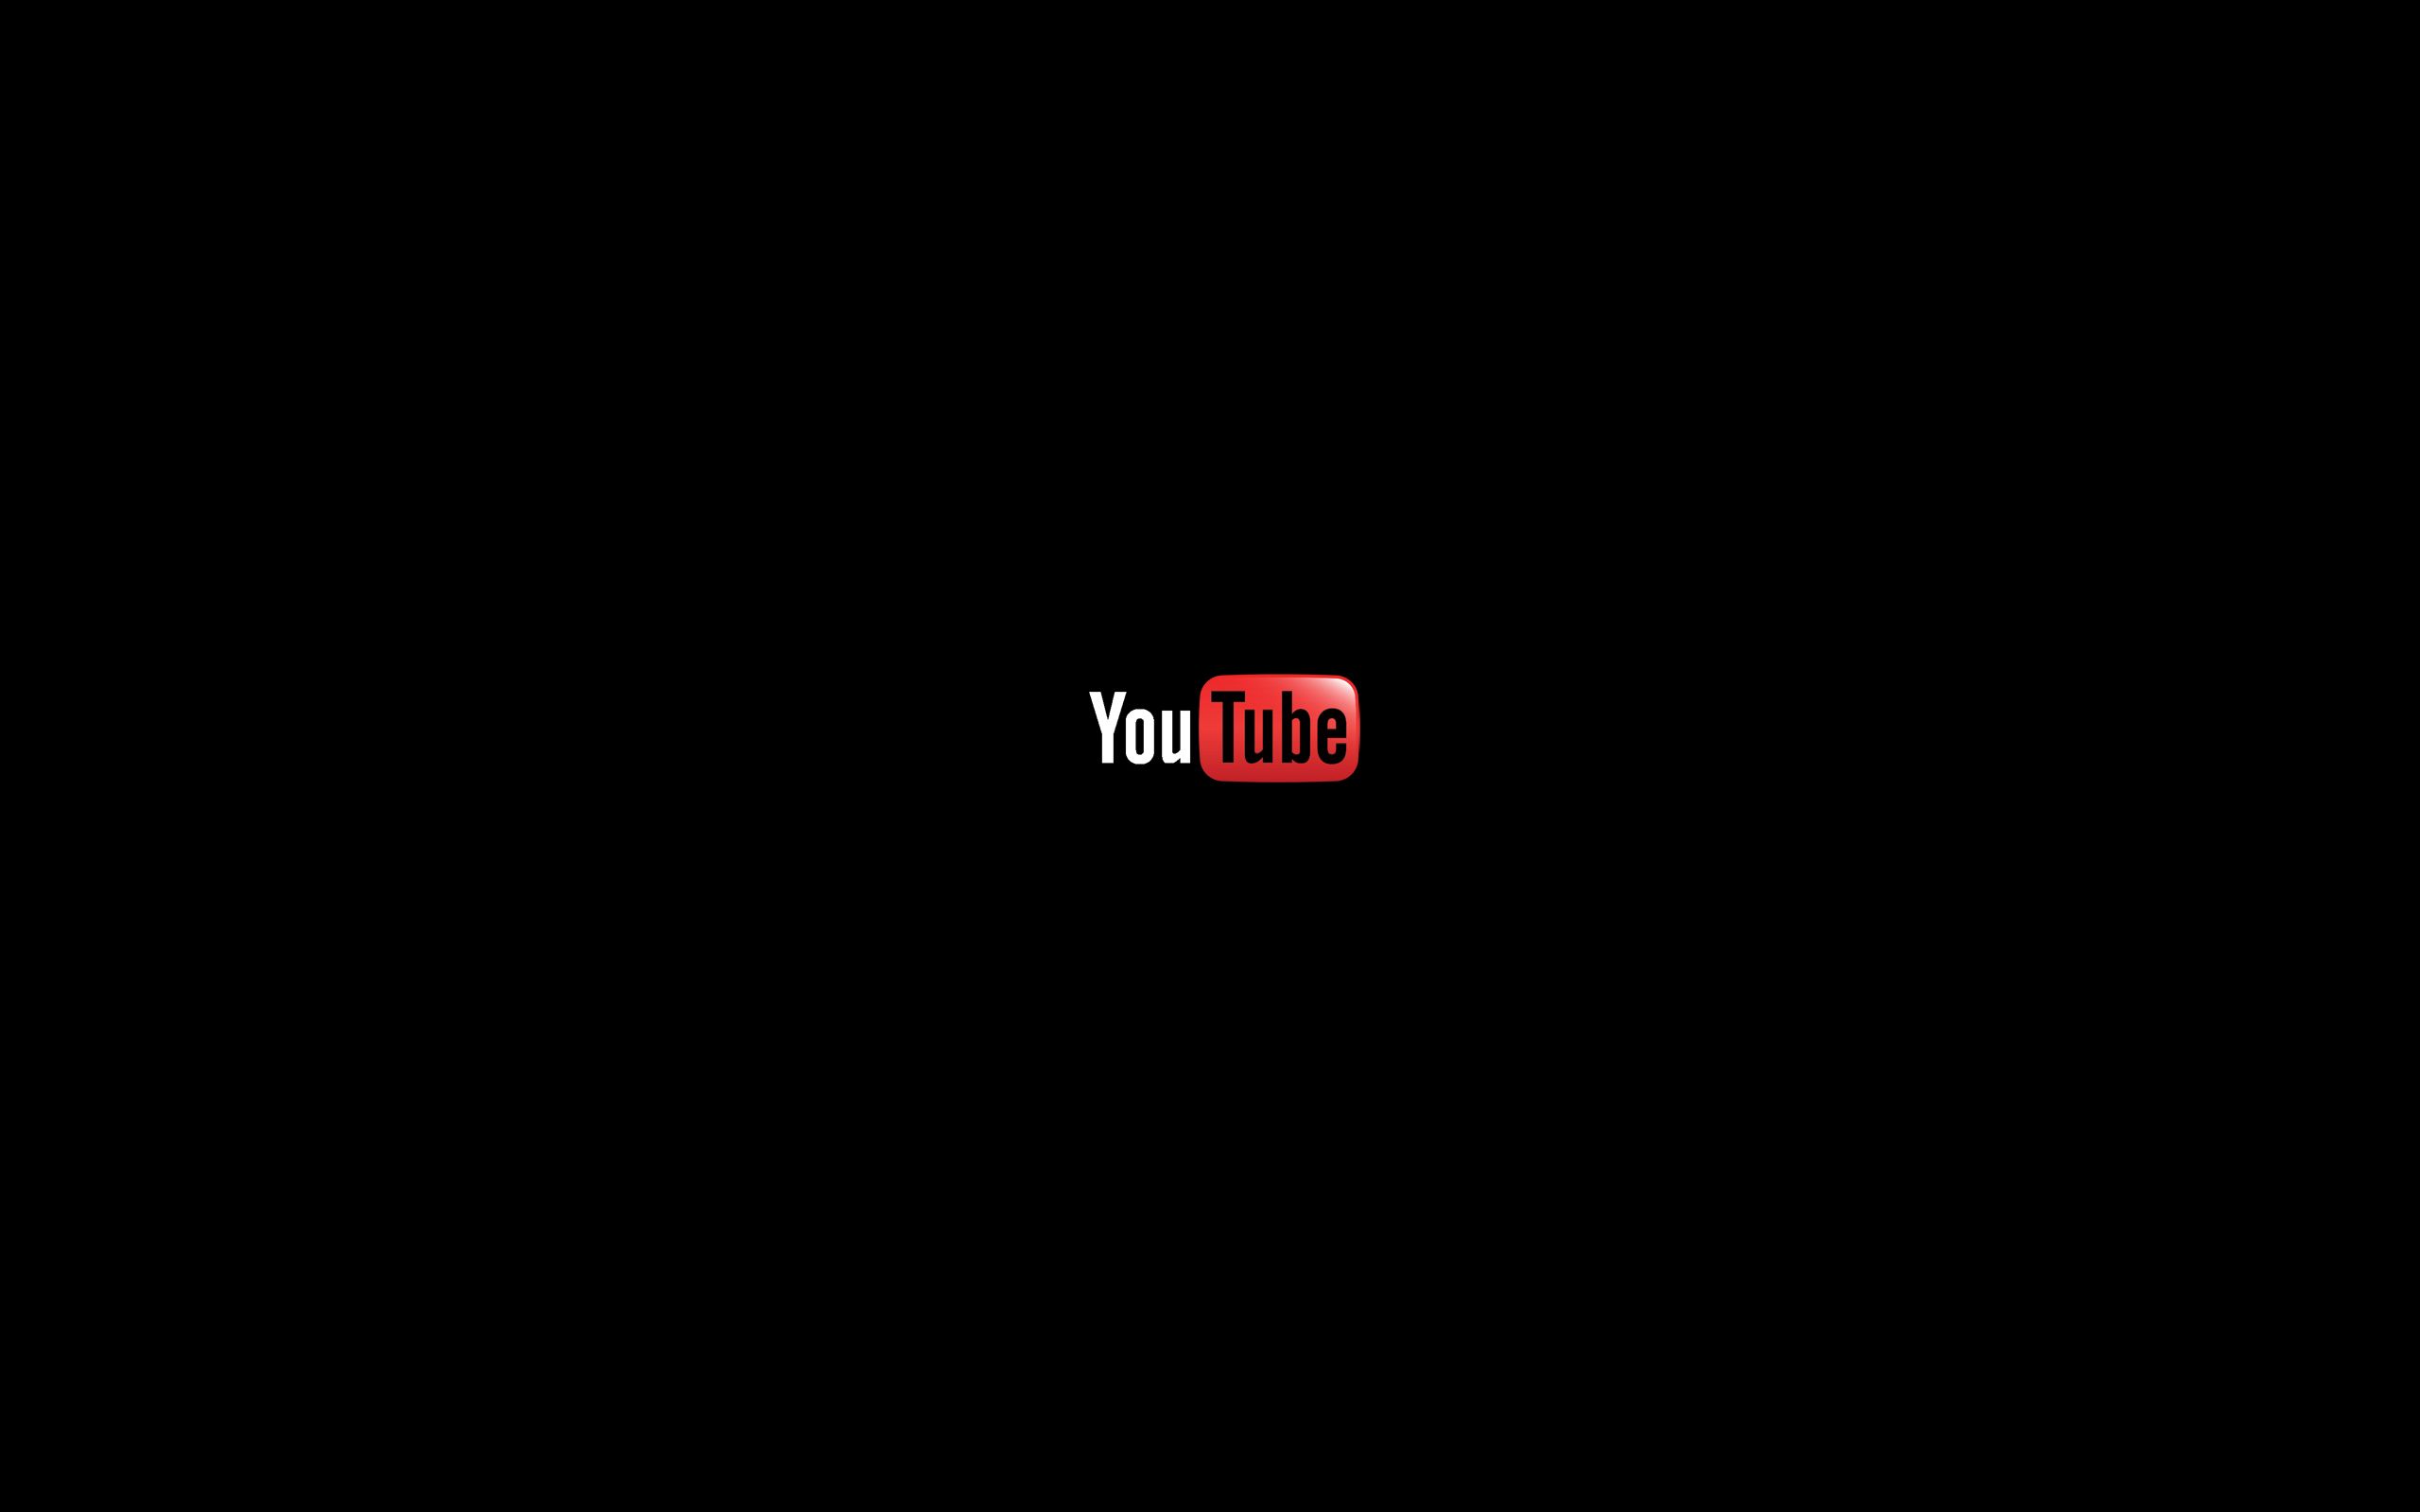 Bạn muốn trang trí cho kênh Youtube của mình? Logo Youtube gốc 4K 2048x1152 sẽ giúp kênh của bạn trở nên chuyên nghiệp hơn. Hình ảnh Art đẹp mắt, trải nghiệm xem video tuyệt vời, và nhiều tính năng đáng kinh ngạc. Hãy cập nhật để có logo mới nhất cho kênh của mình và hấp dẫn người xem hơn.